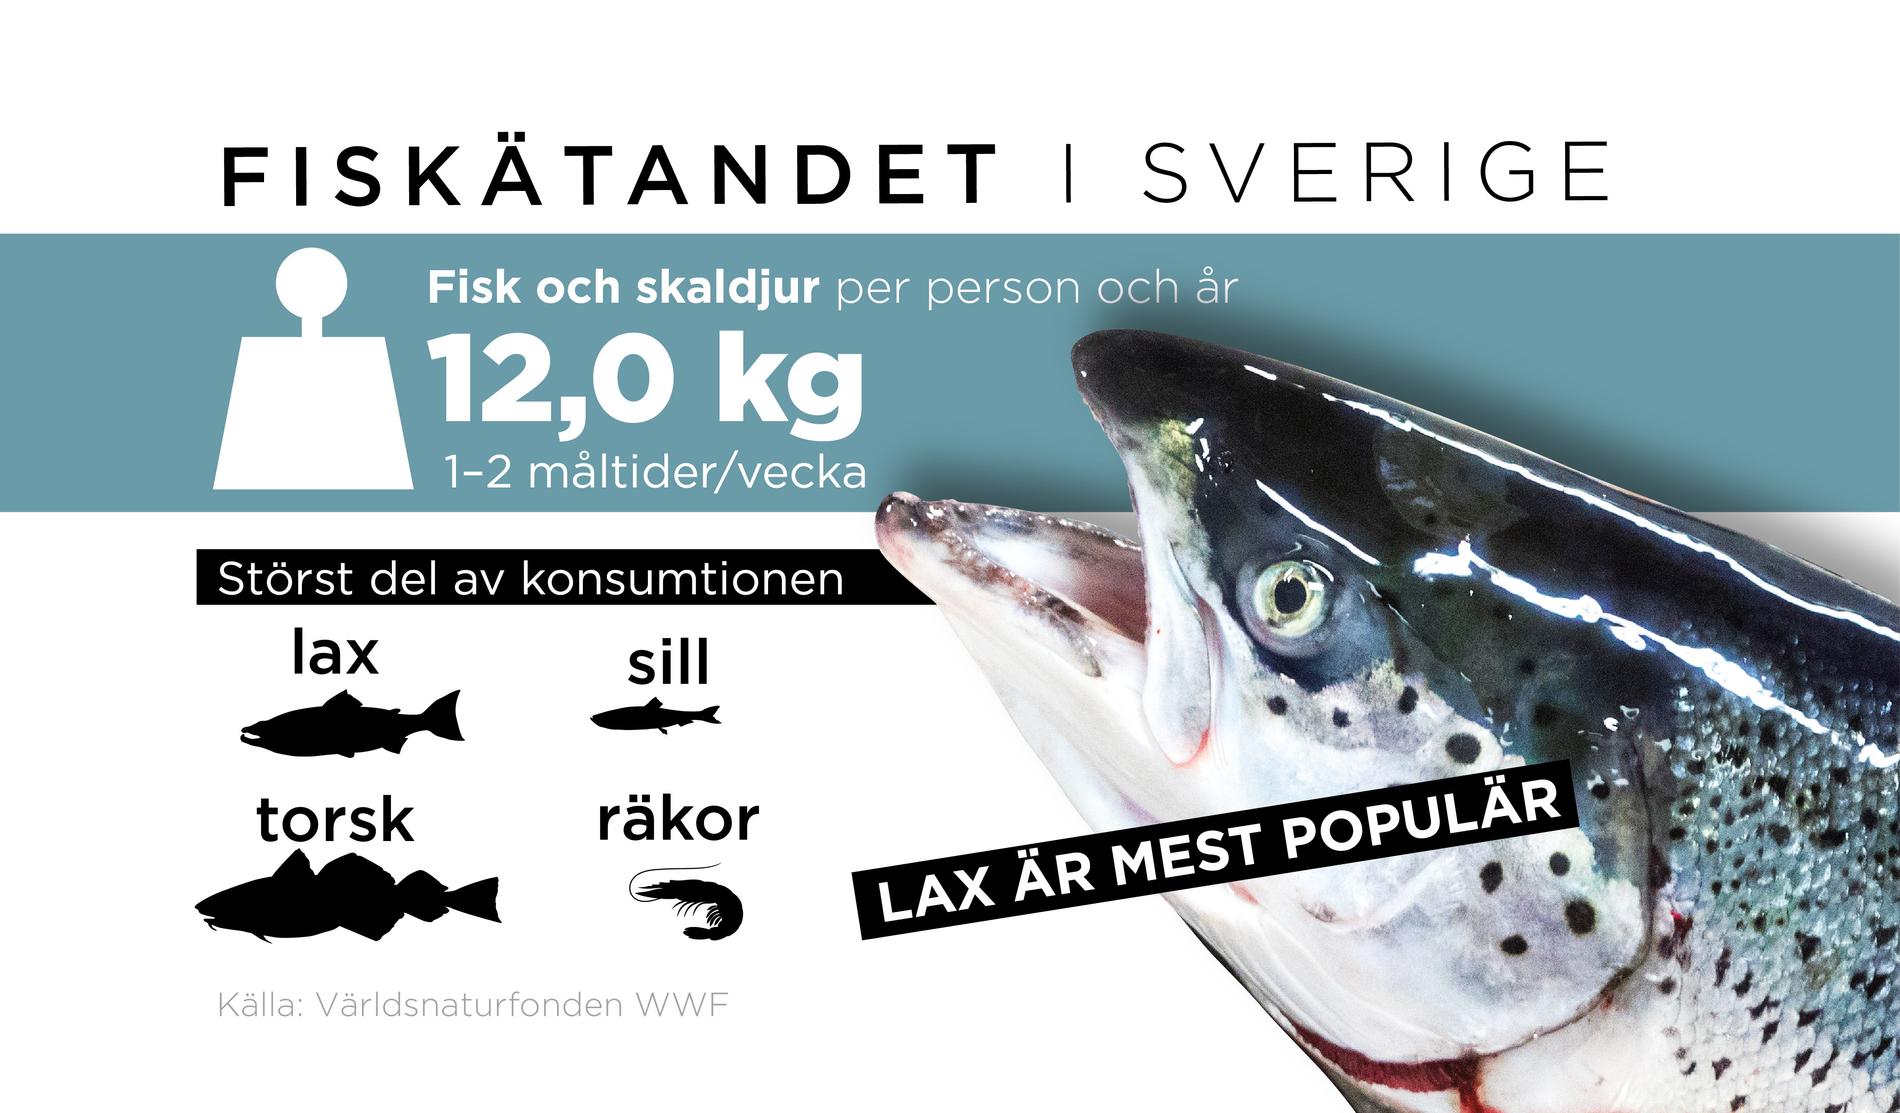 Tolv kilo fisk och skaldjur per år – och helst lax. Så ser svenskarnas fiskätande ut.